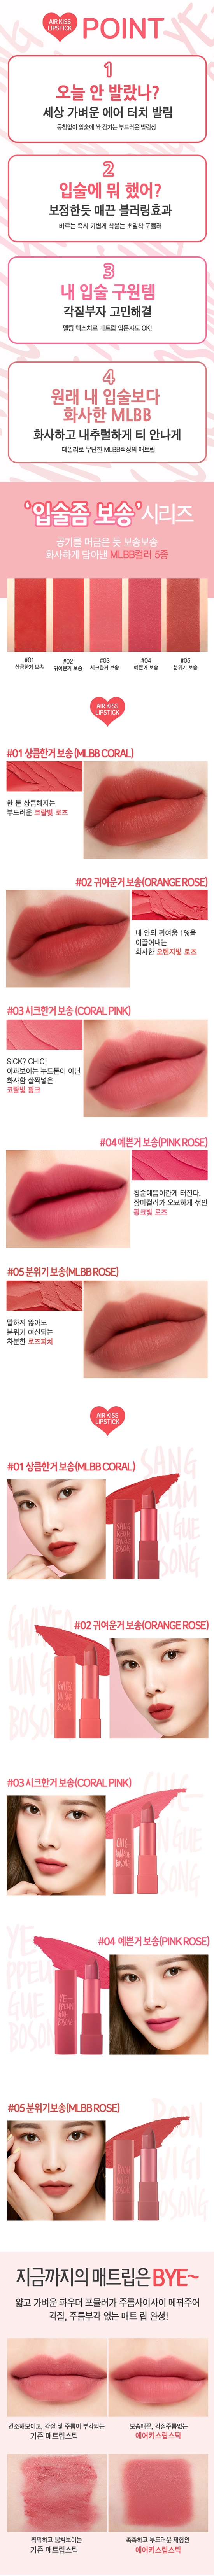 macqueen-new-york-air-kiss-lipstick-info2.jpg